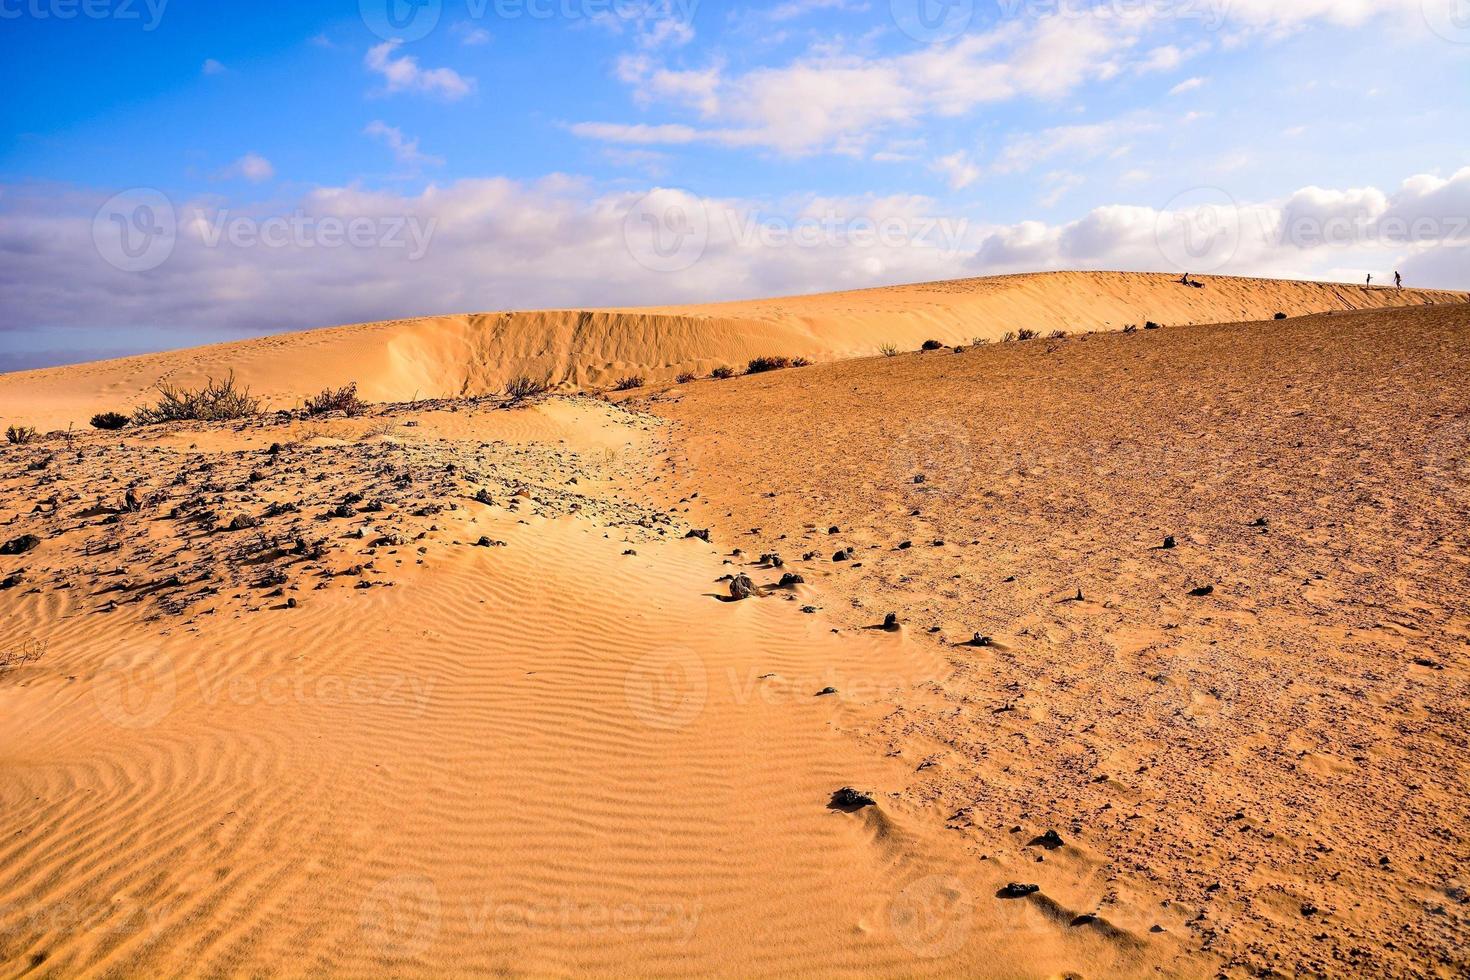 paysage désertique pittoresque photo